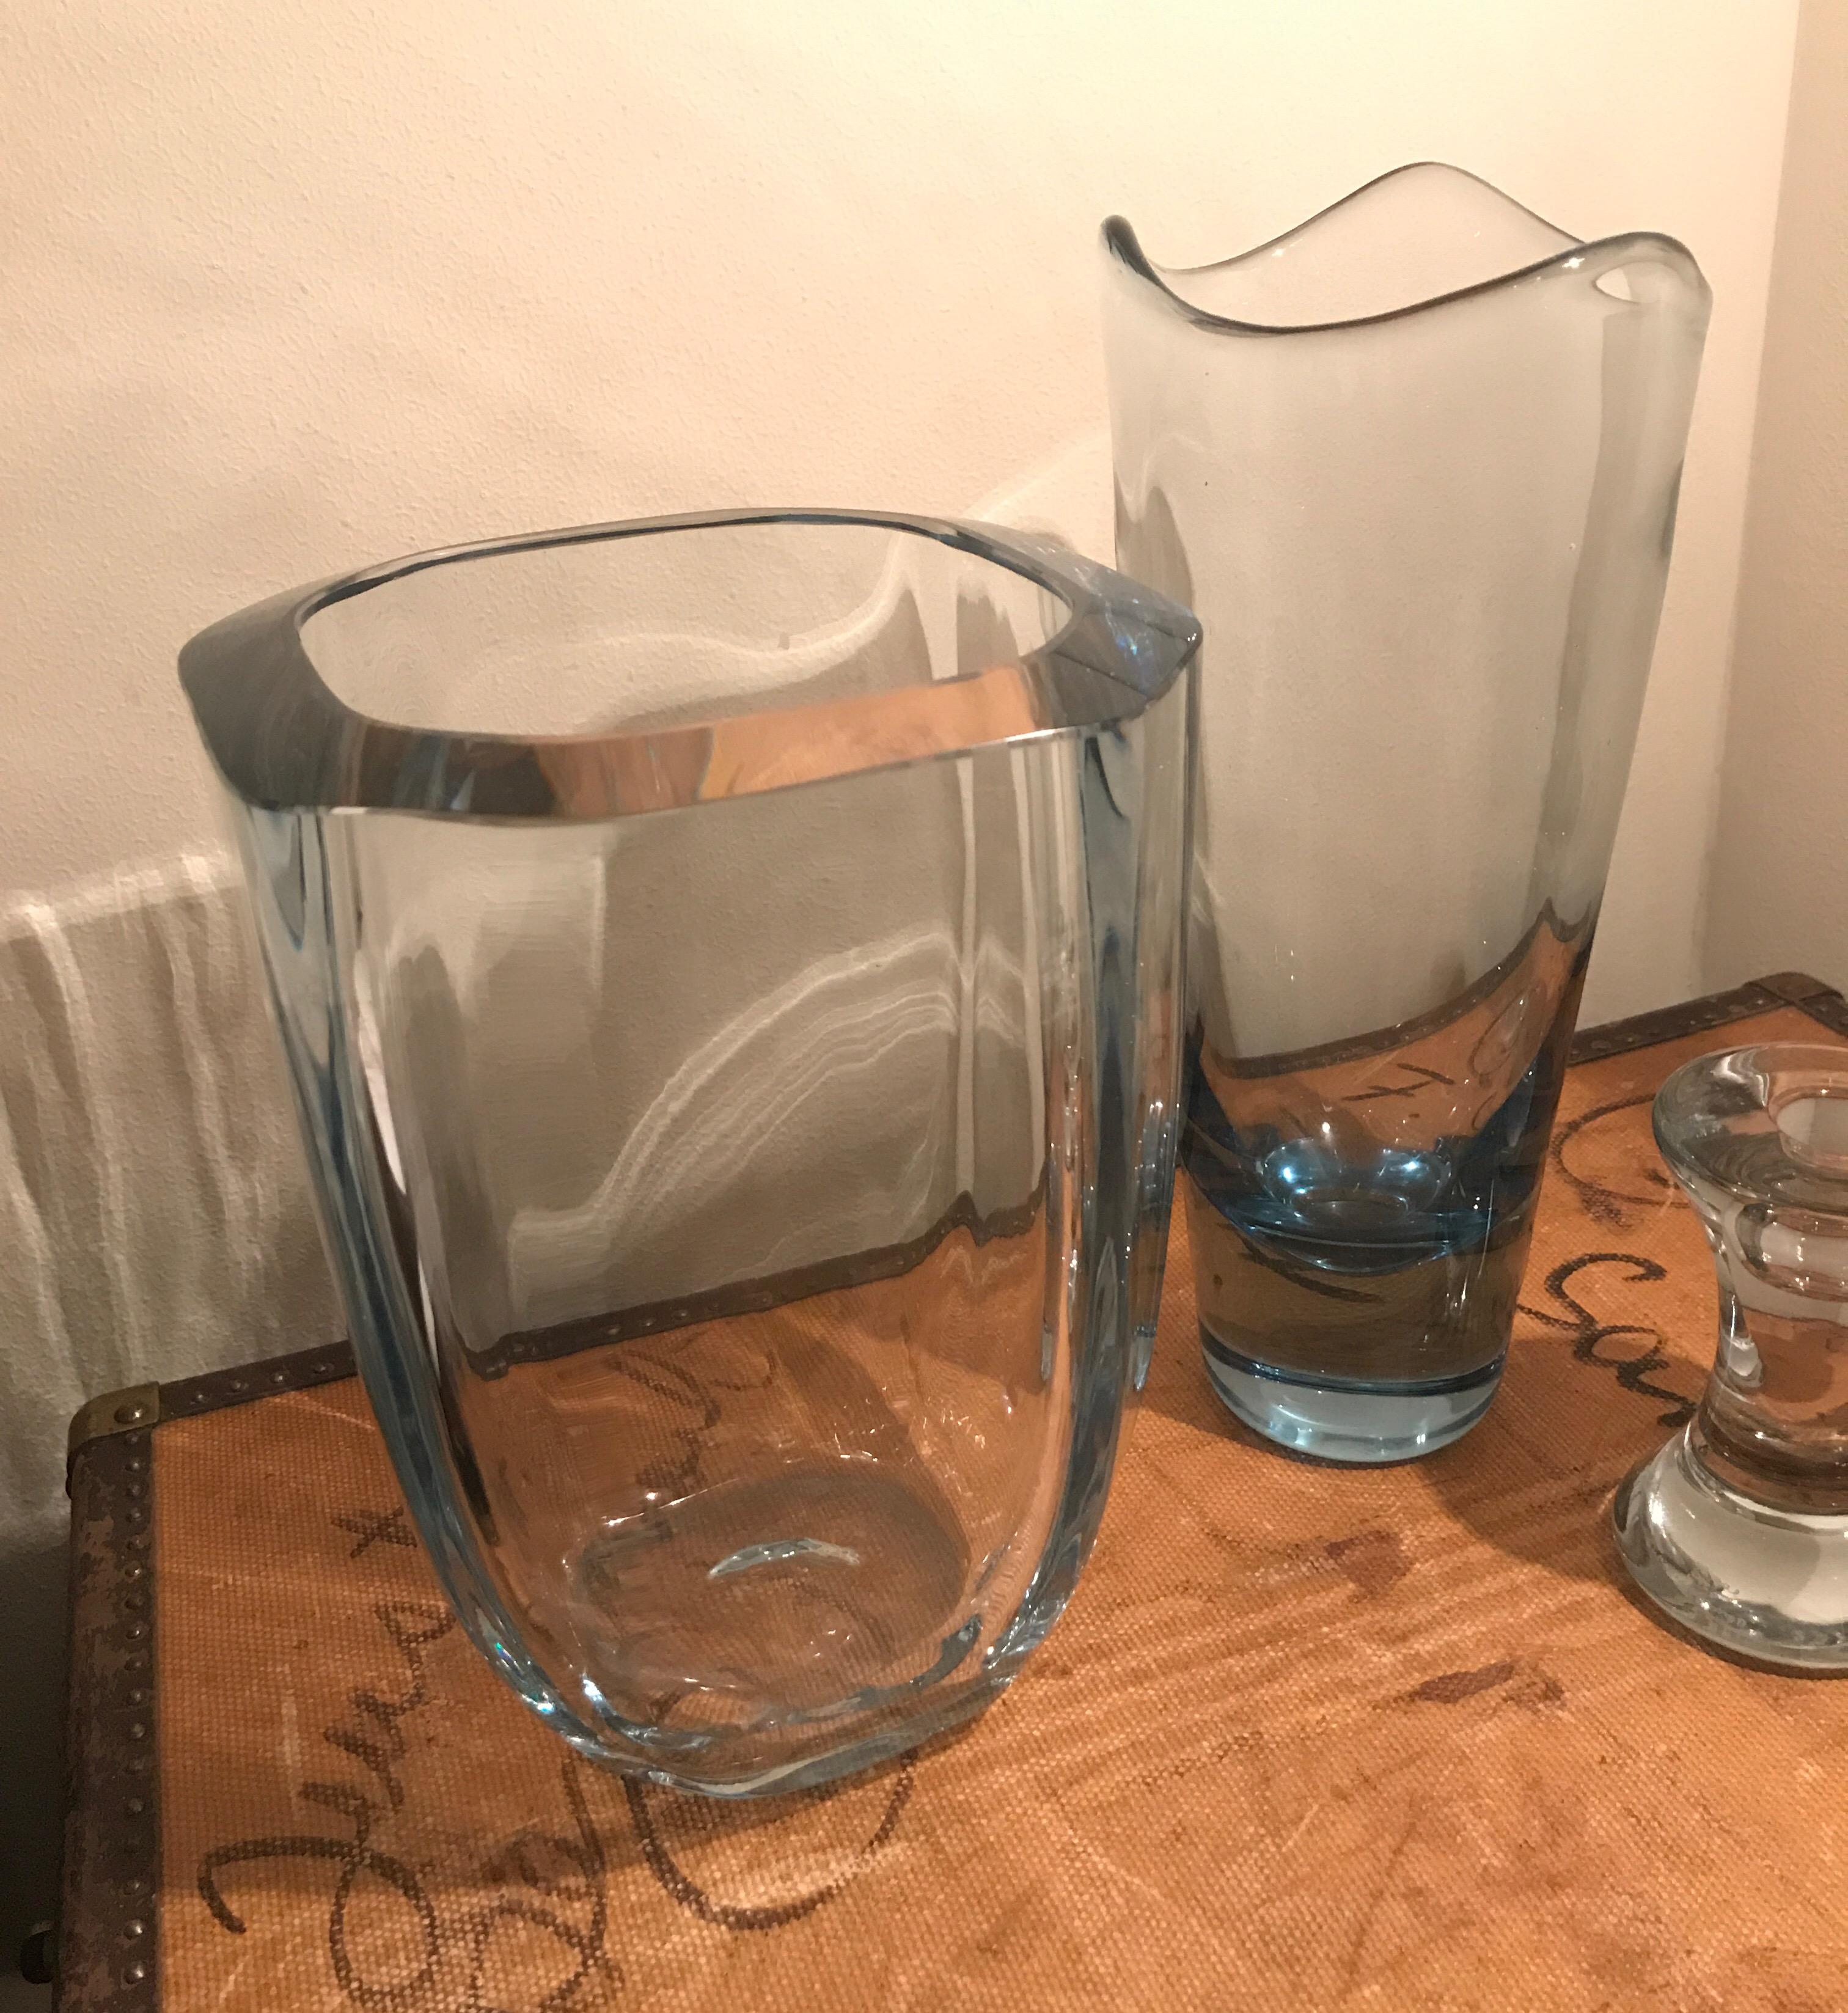 A set of vintage royal Copenhagen glass designed by Per Lutkin for Holmegaard. 
Per Lütken was a Danish glassmaker, most famous for his works at Holmegaard Glass Factory. Lütken has set his signature on the history of Danish glassmaking, designing